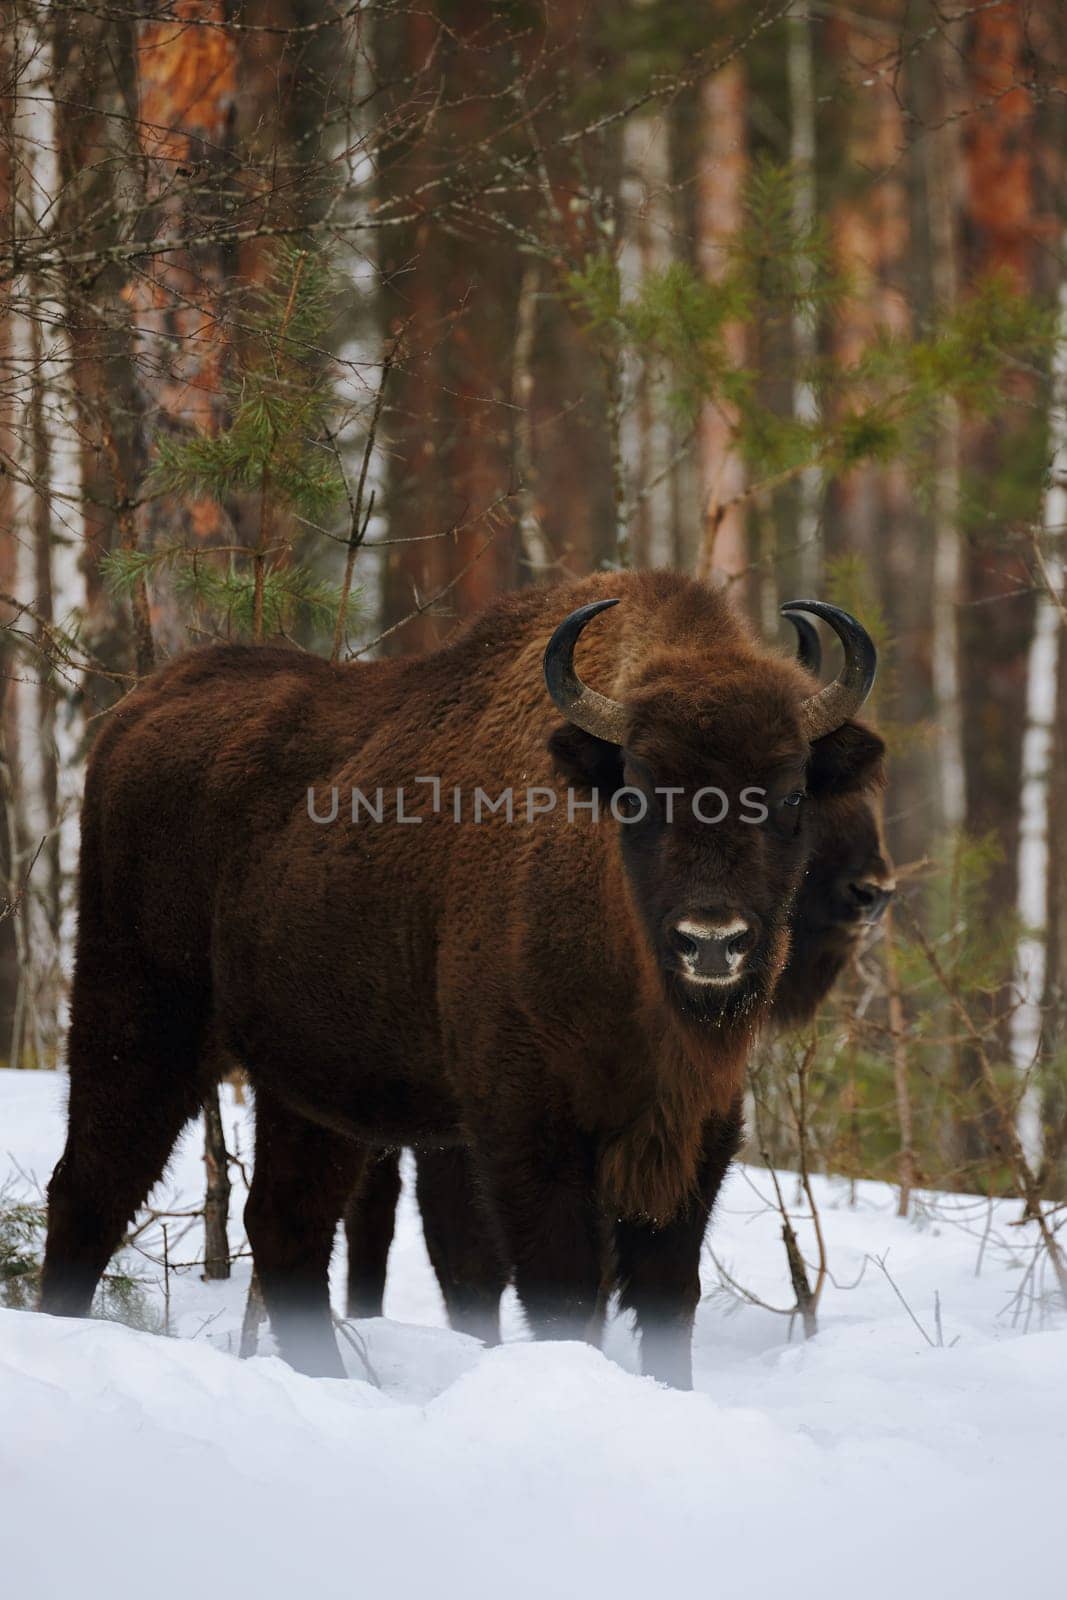 Wild European Bison in Winter Forest. European bison - Bison bonasus, artiodactyl mammals of the genus bison by EvgeniyQW